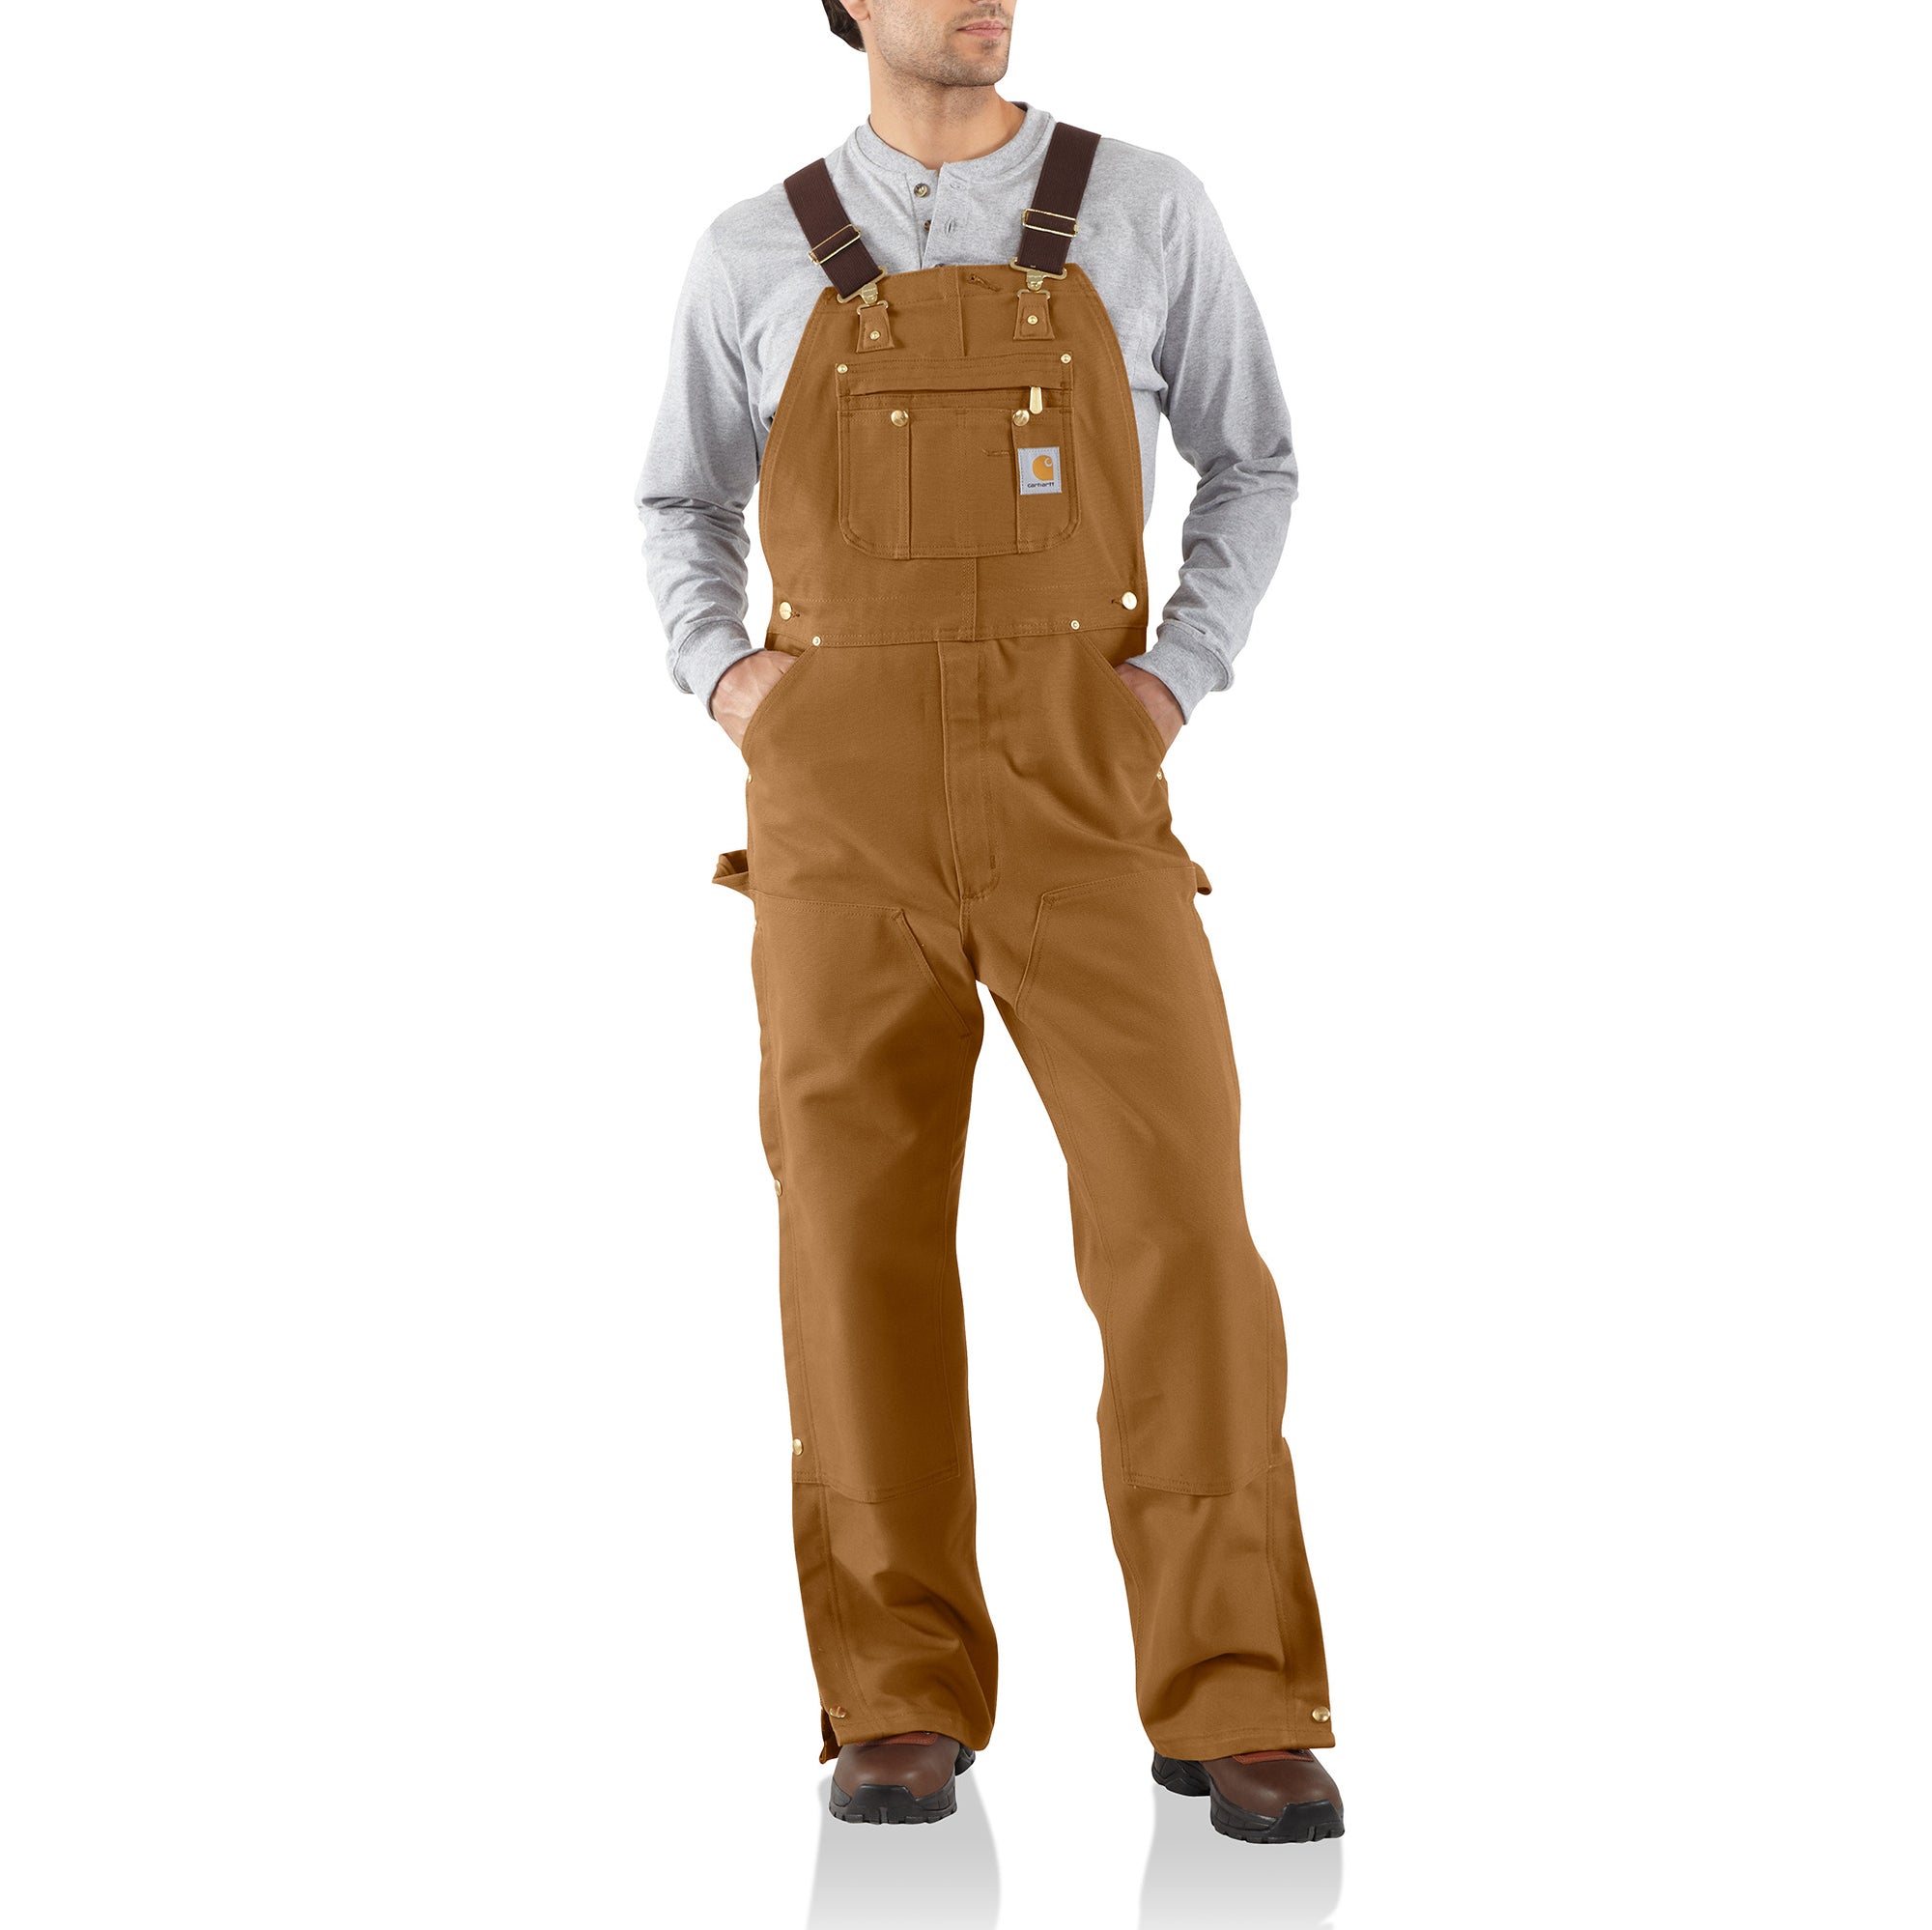 Carhartt Men's Zip-to-Thigh Bib Overall - Work World - Workwear, Work Boots, Safety Gear